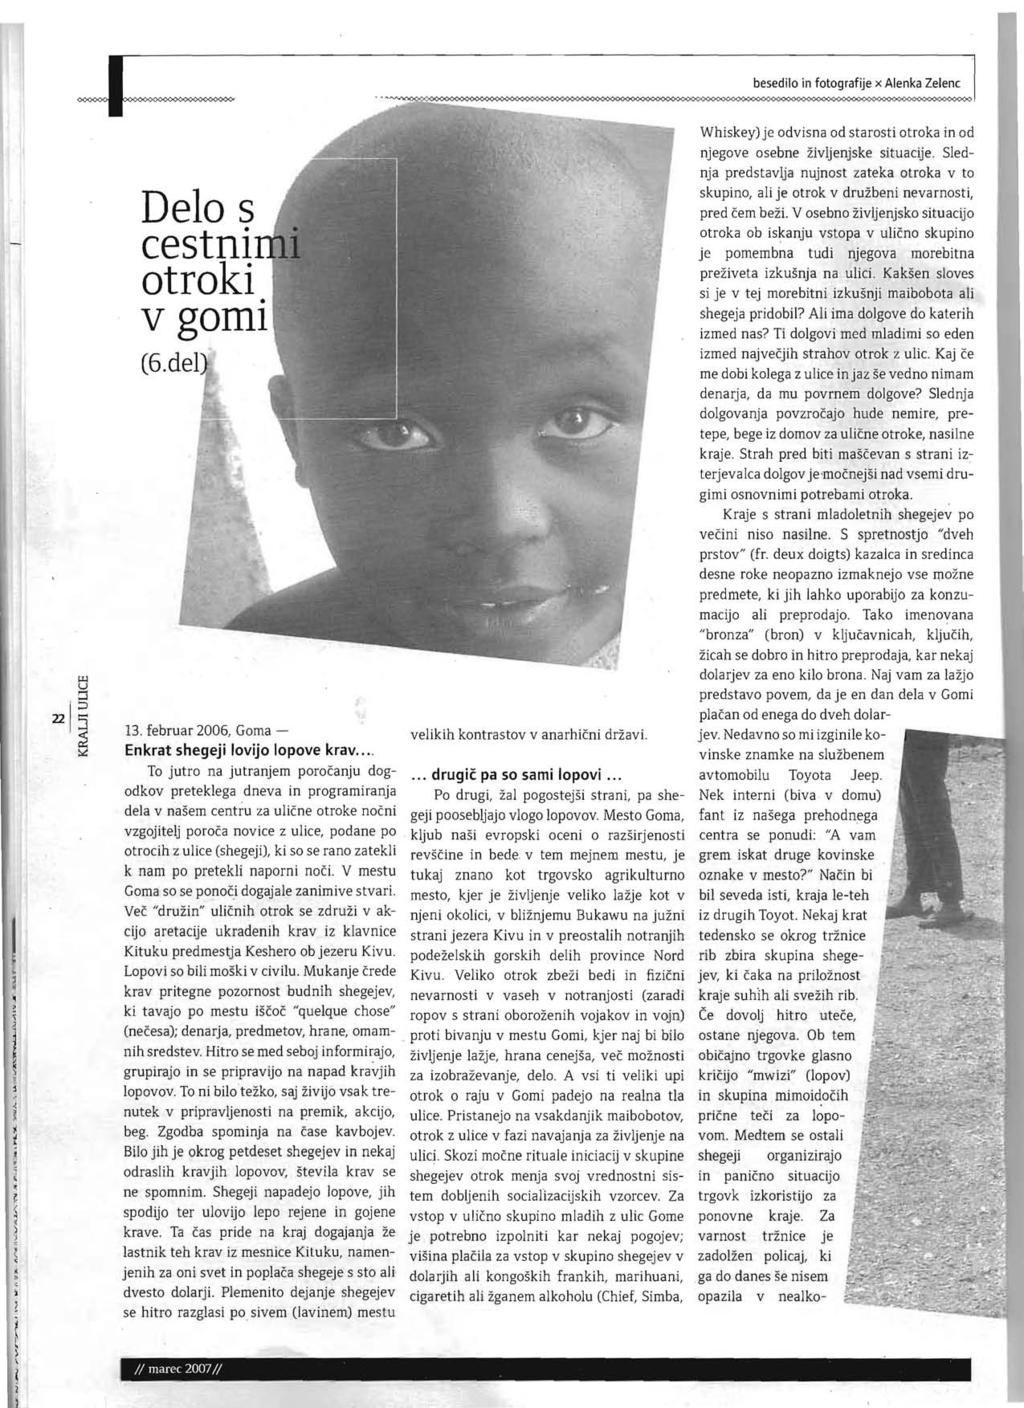 besedilo in fotografije x Alenka Zelenc Delo s cestni otroki v goml (6.del 13. februar 2006, Goma - Enkrat shegeji lovijo lopove krav.